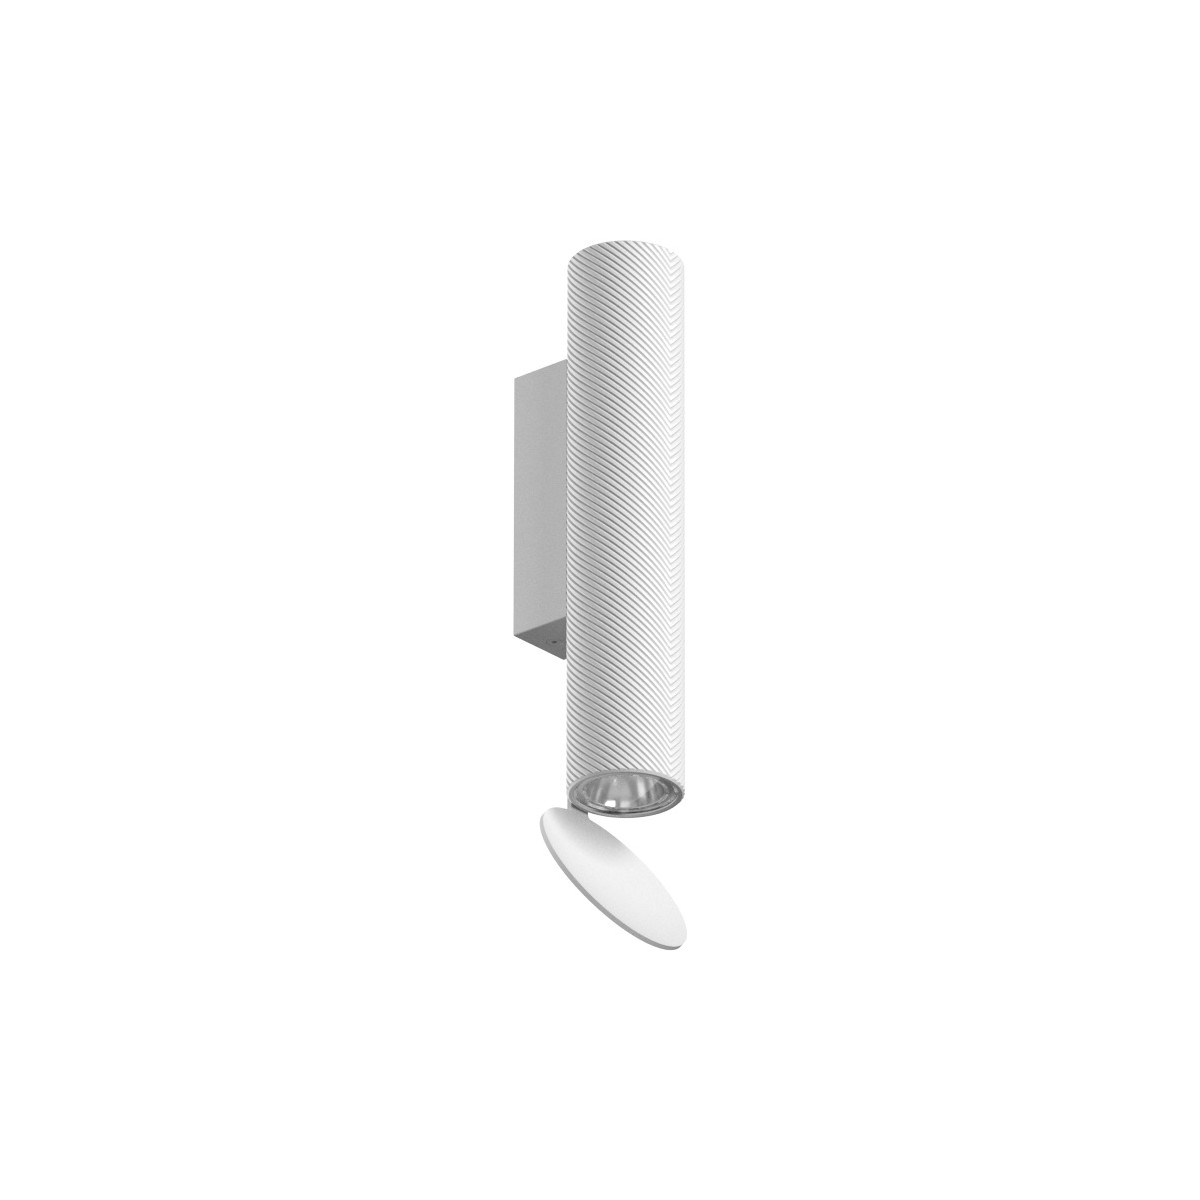 Flauta H22,5cm – Spiga, blanc, indoor